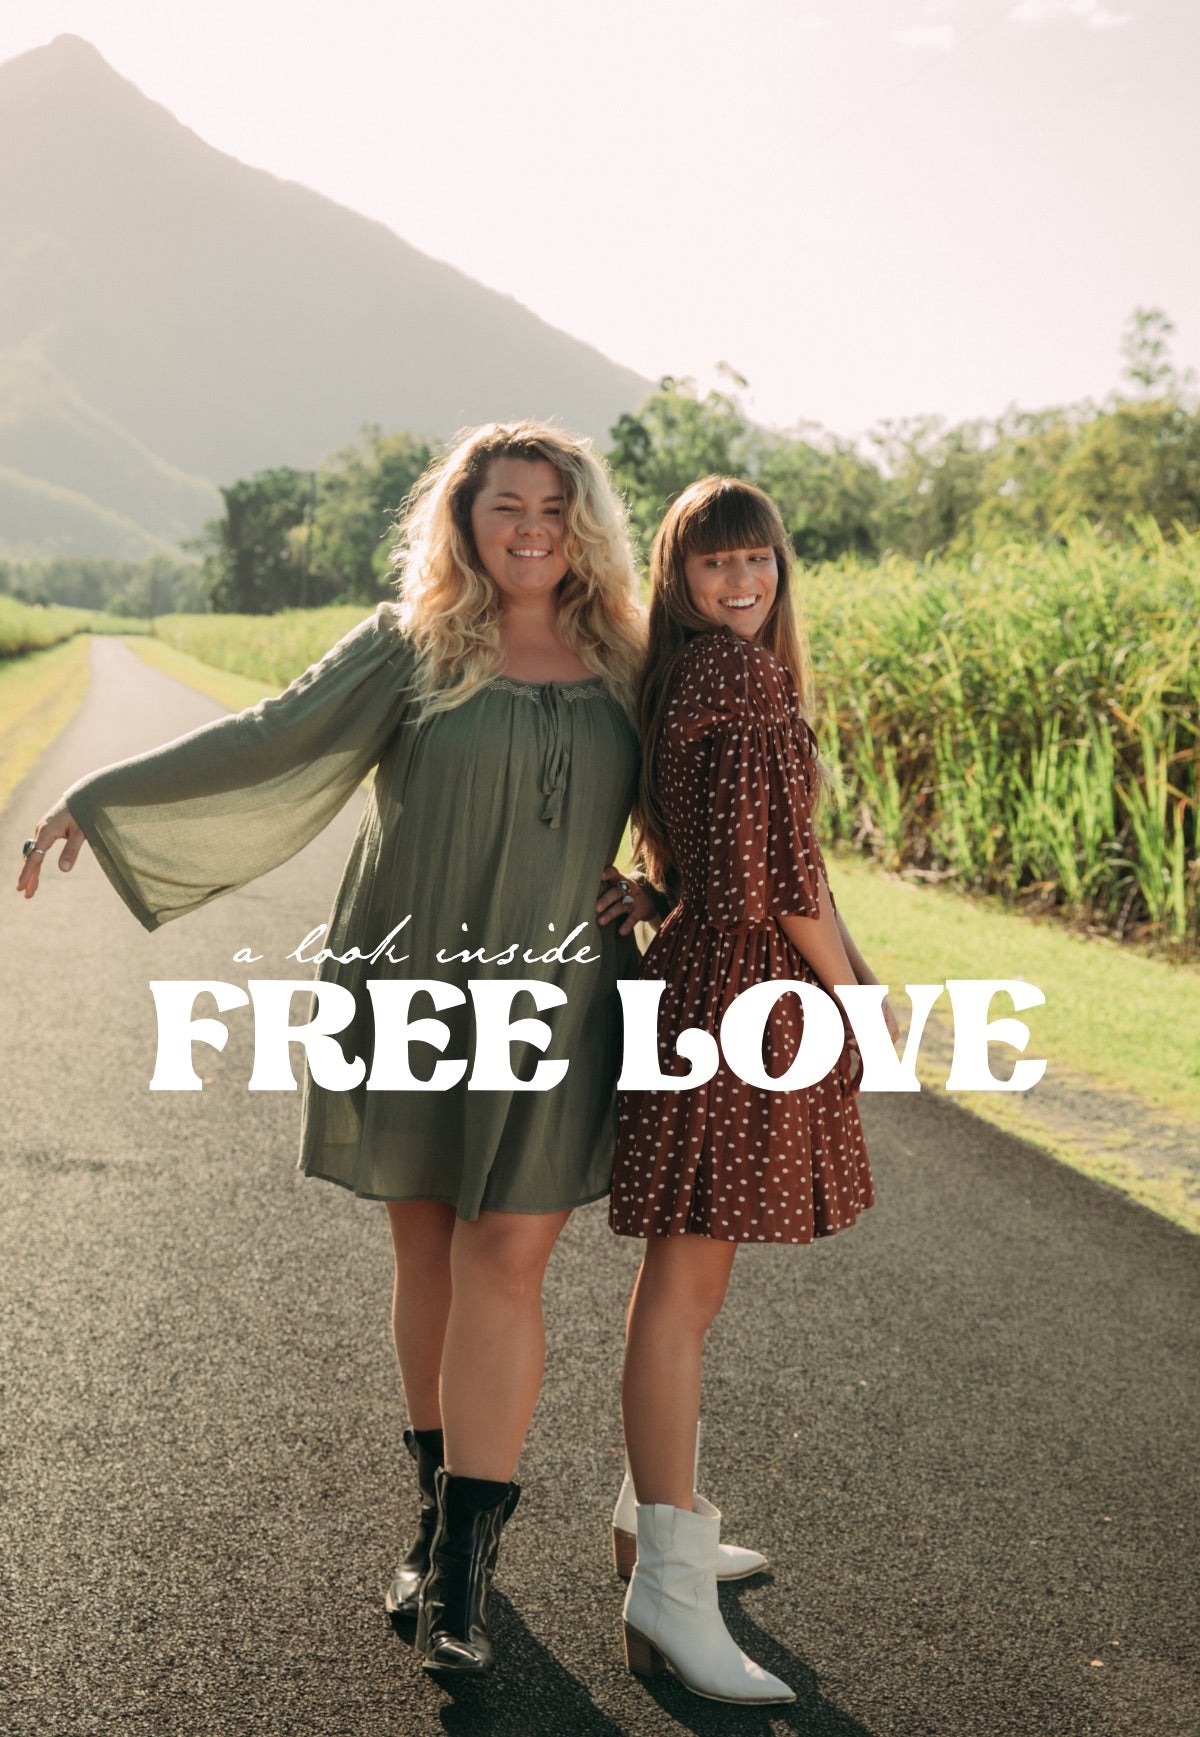 A look inside: Free Love